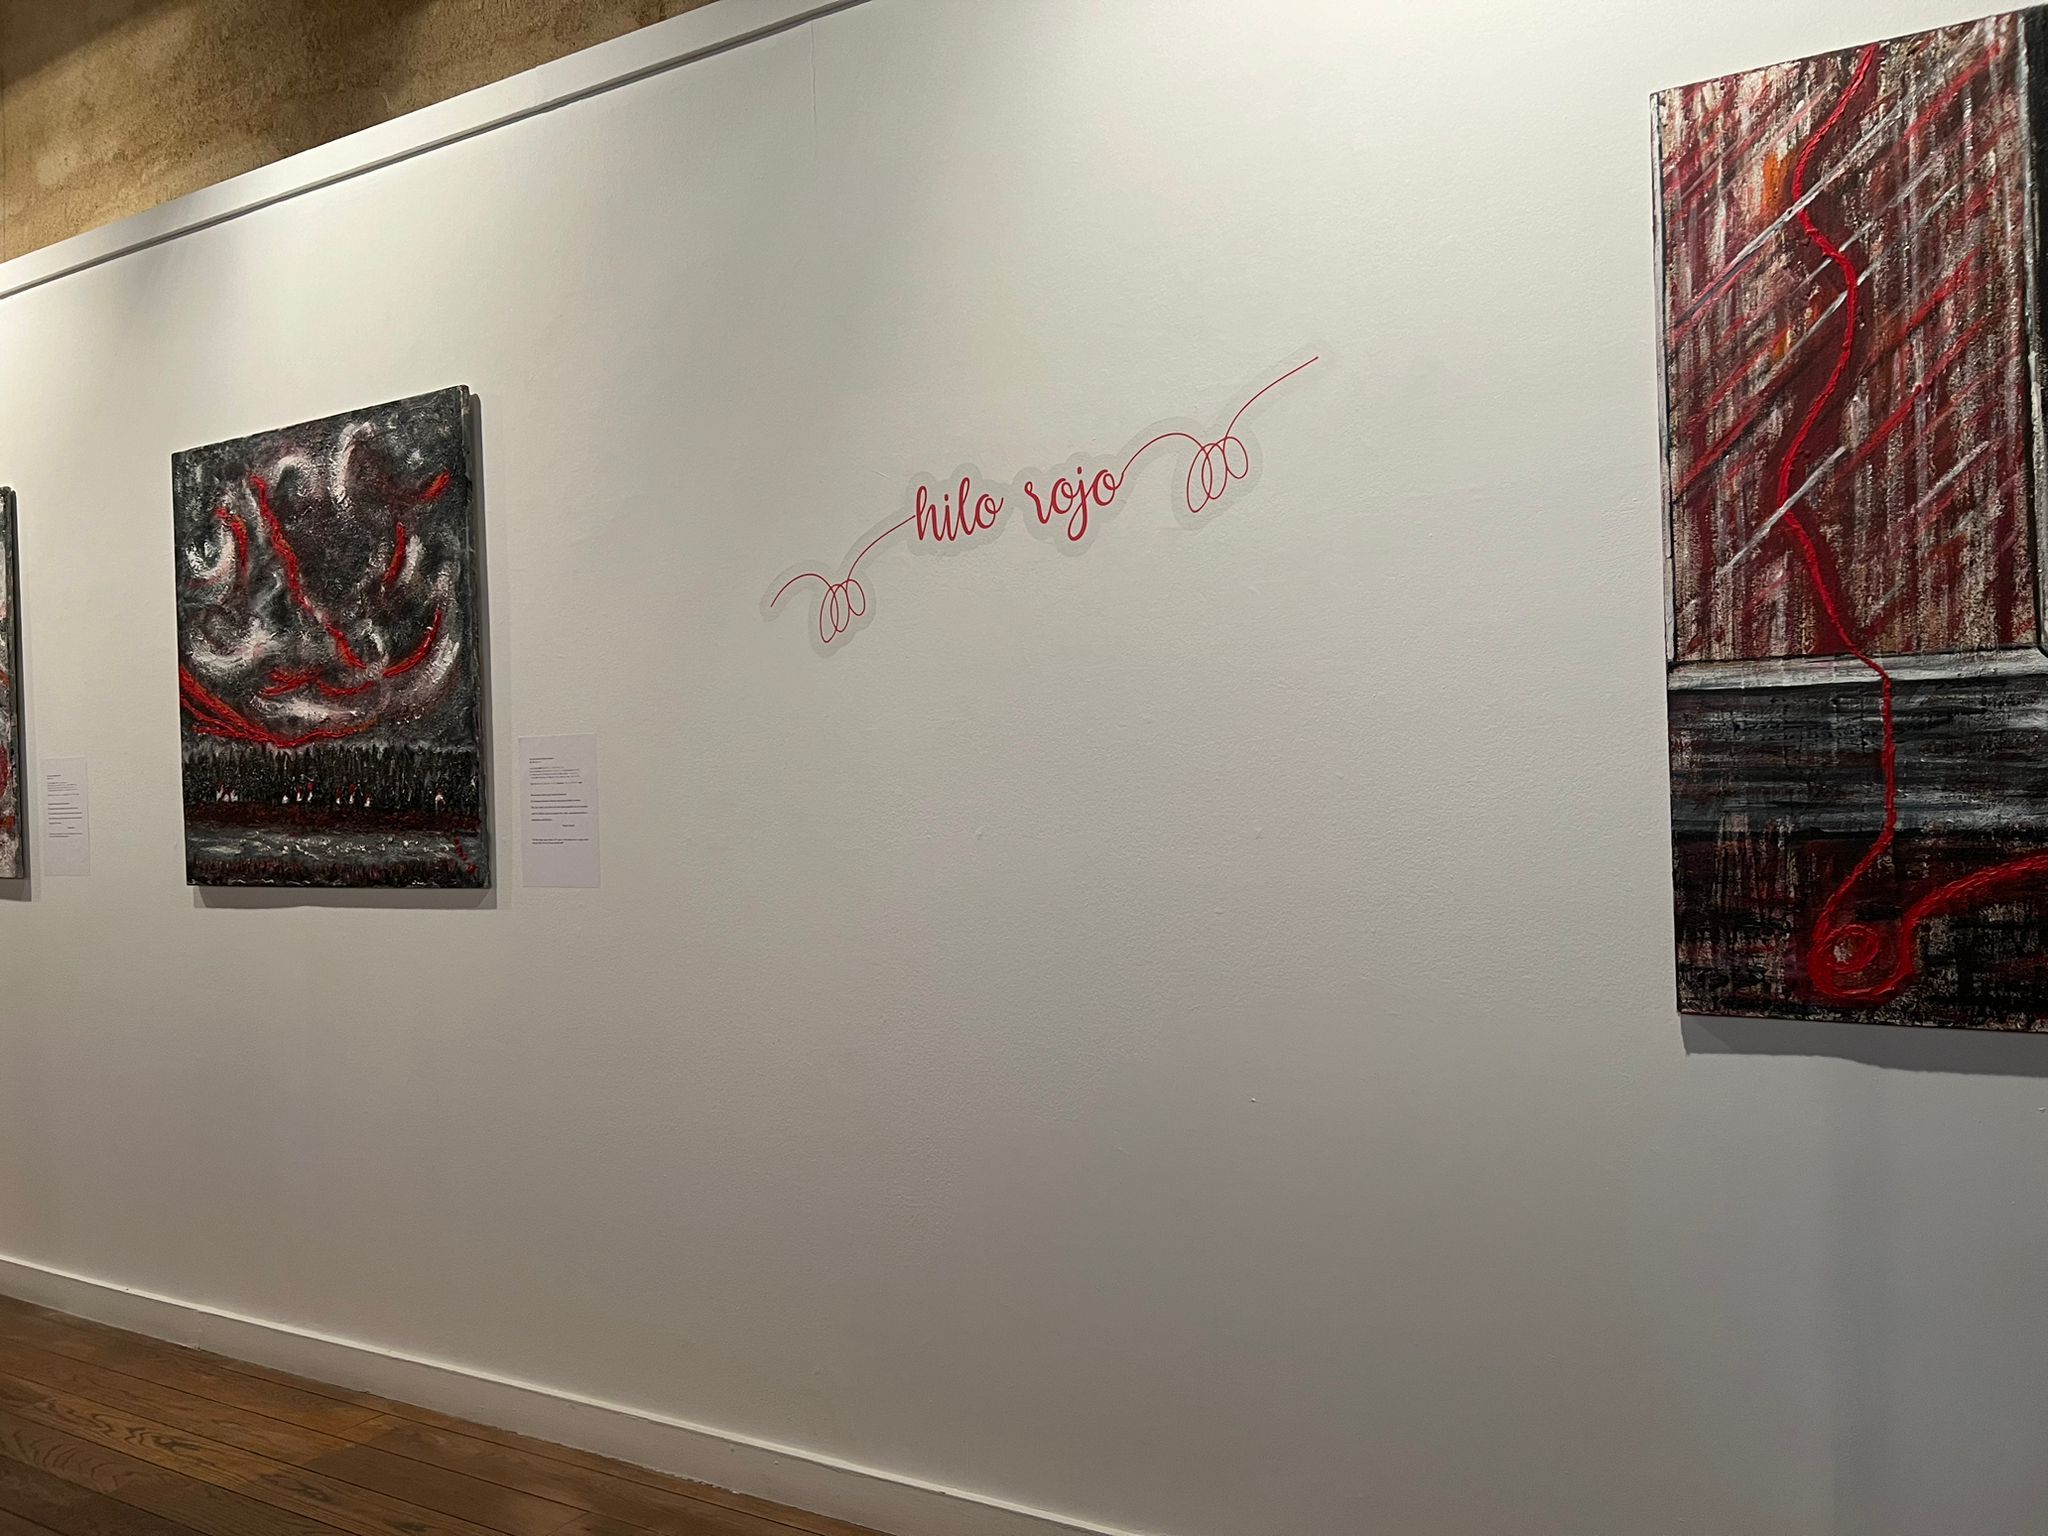 GALERÍA | Presentación de  la exposición 'El Hilo Rojo'